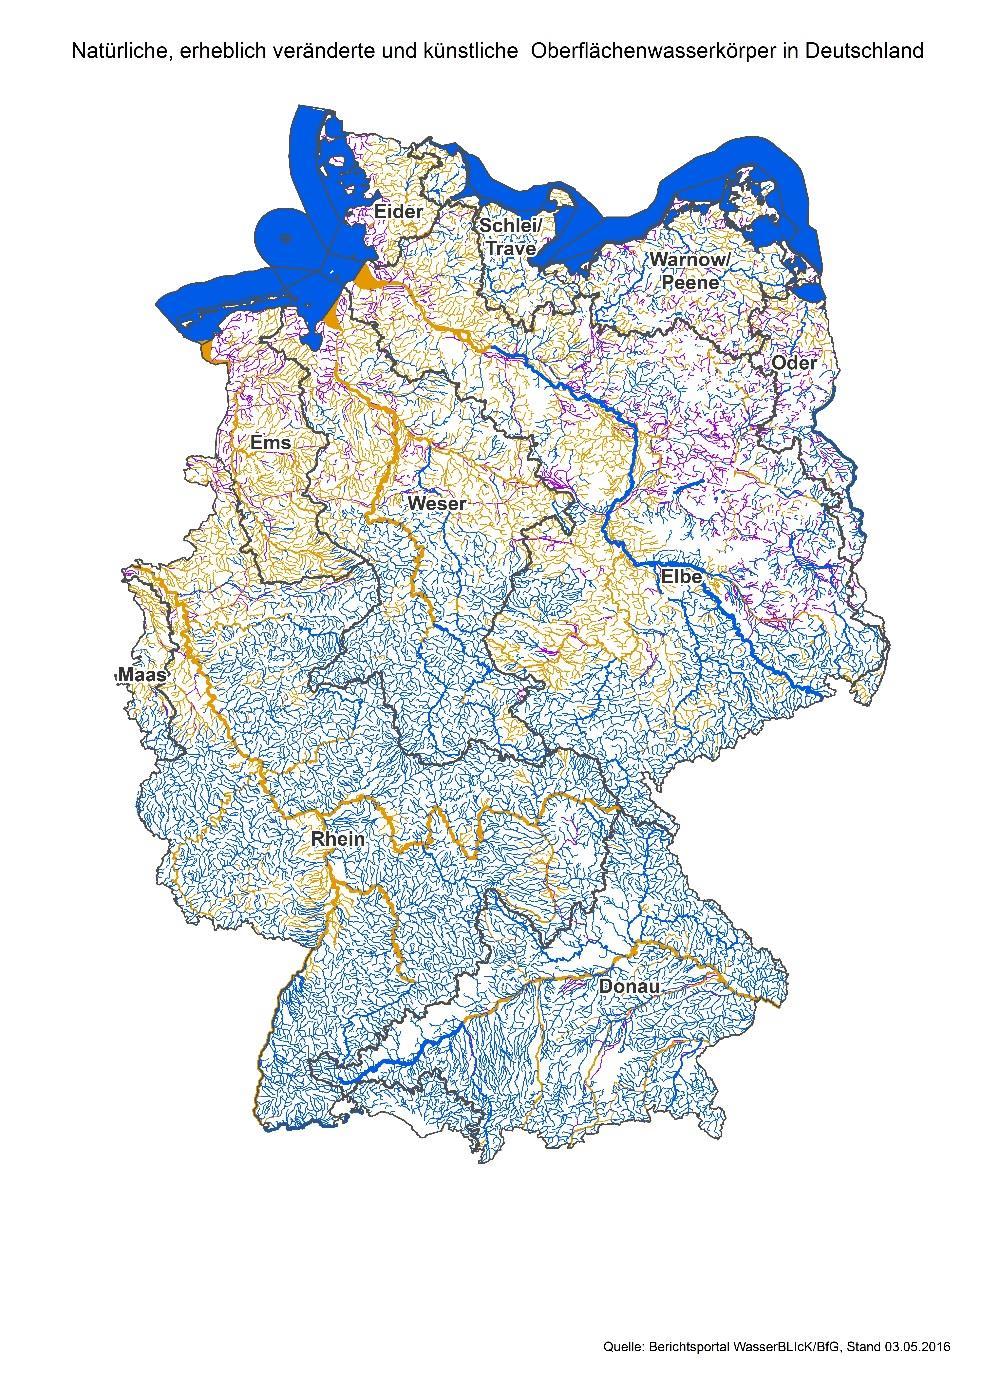 Natürliche, erheblich veränderte, künstliche WK (Deutschland 2016) Wasserkörper